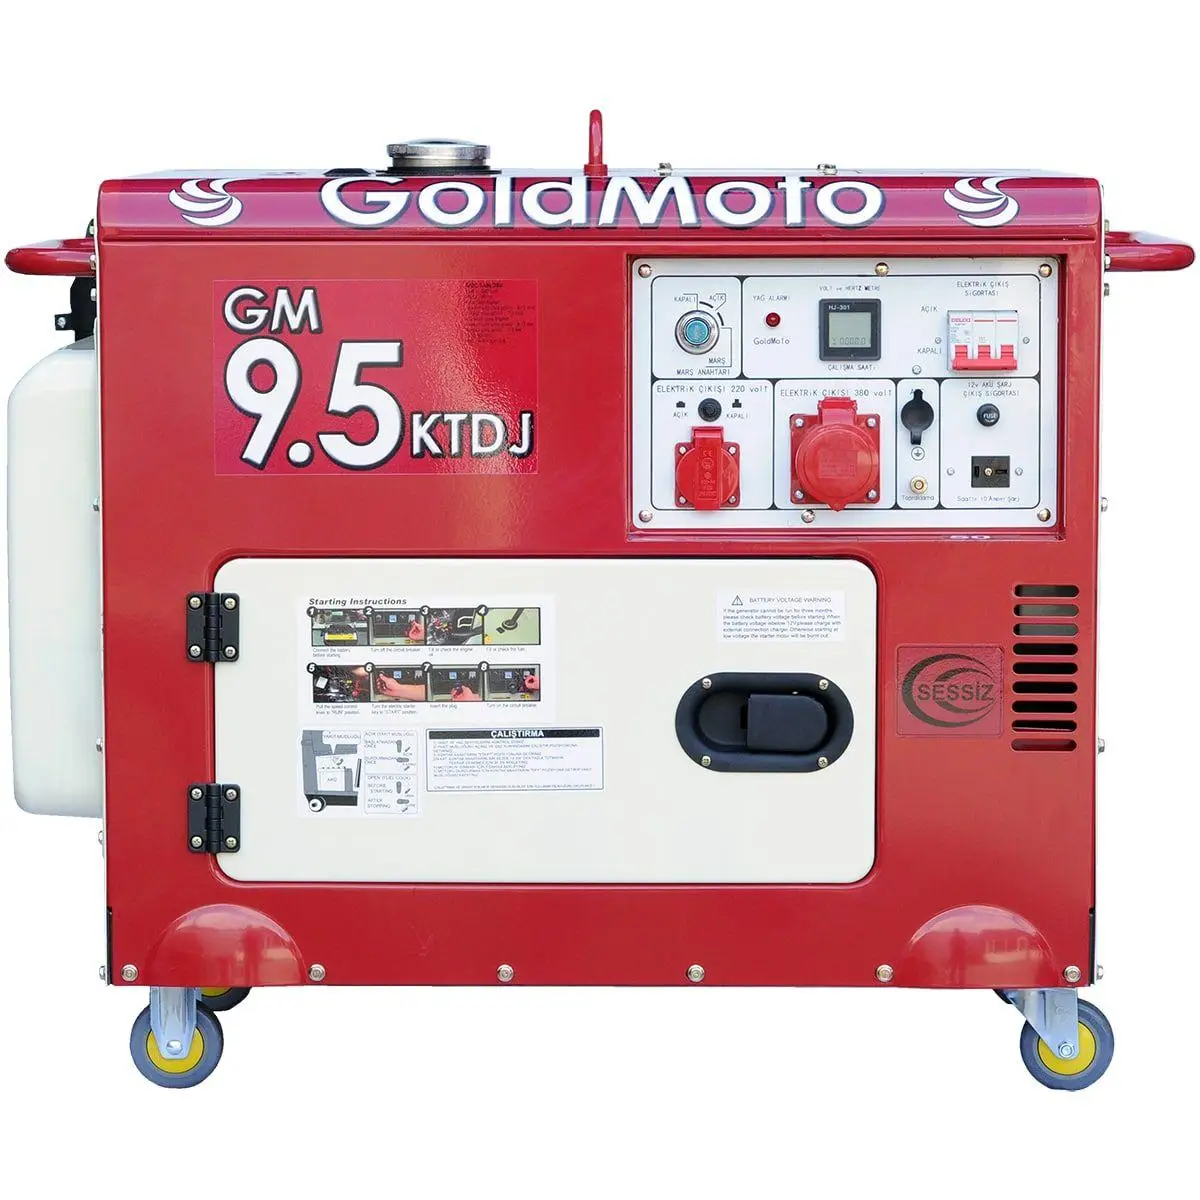   GoldMoto GM9.5KTDJ (GM9.5KTDJ)